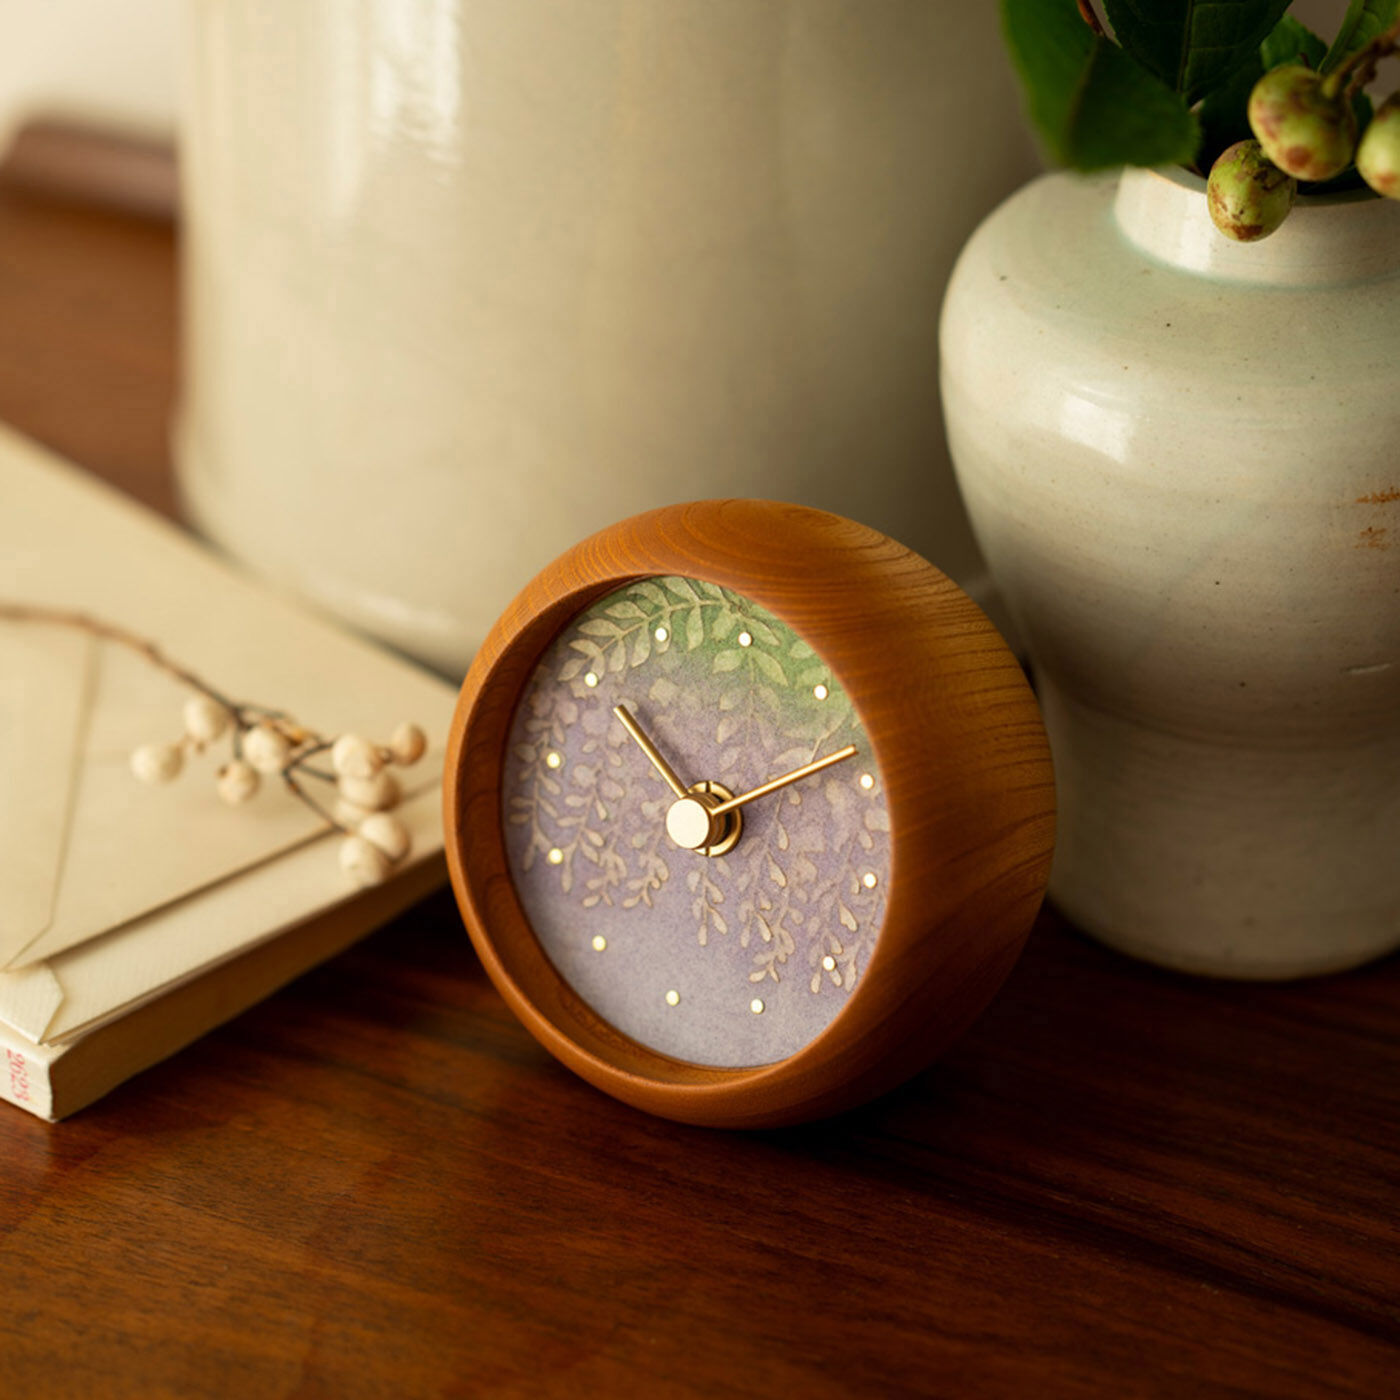 ＆Stories|金沢の時計職人が手掛けた たおやかに揺れる 藤の花に見惚れる置時計〈欅〉|伝統工芸の技術を取り入れ、藤の花を描いた置時計。